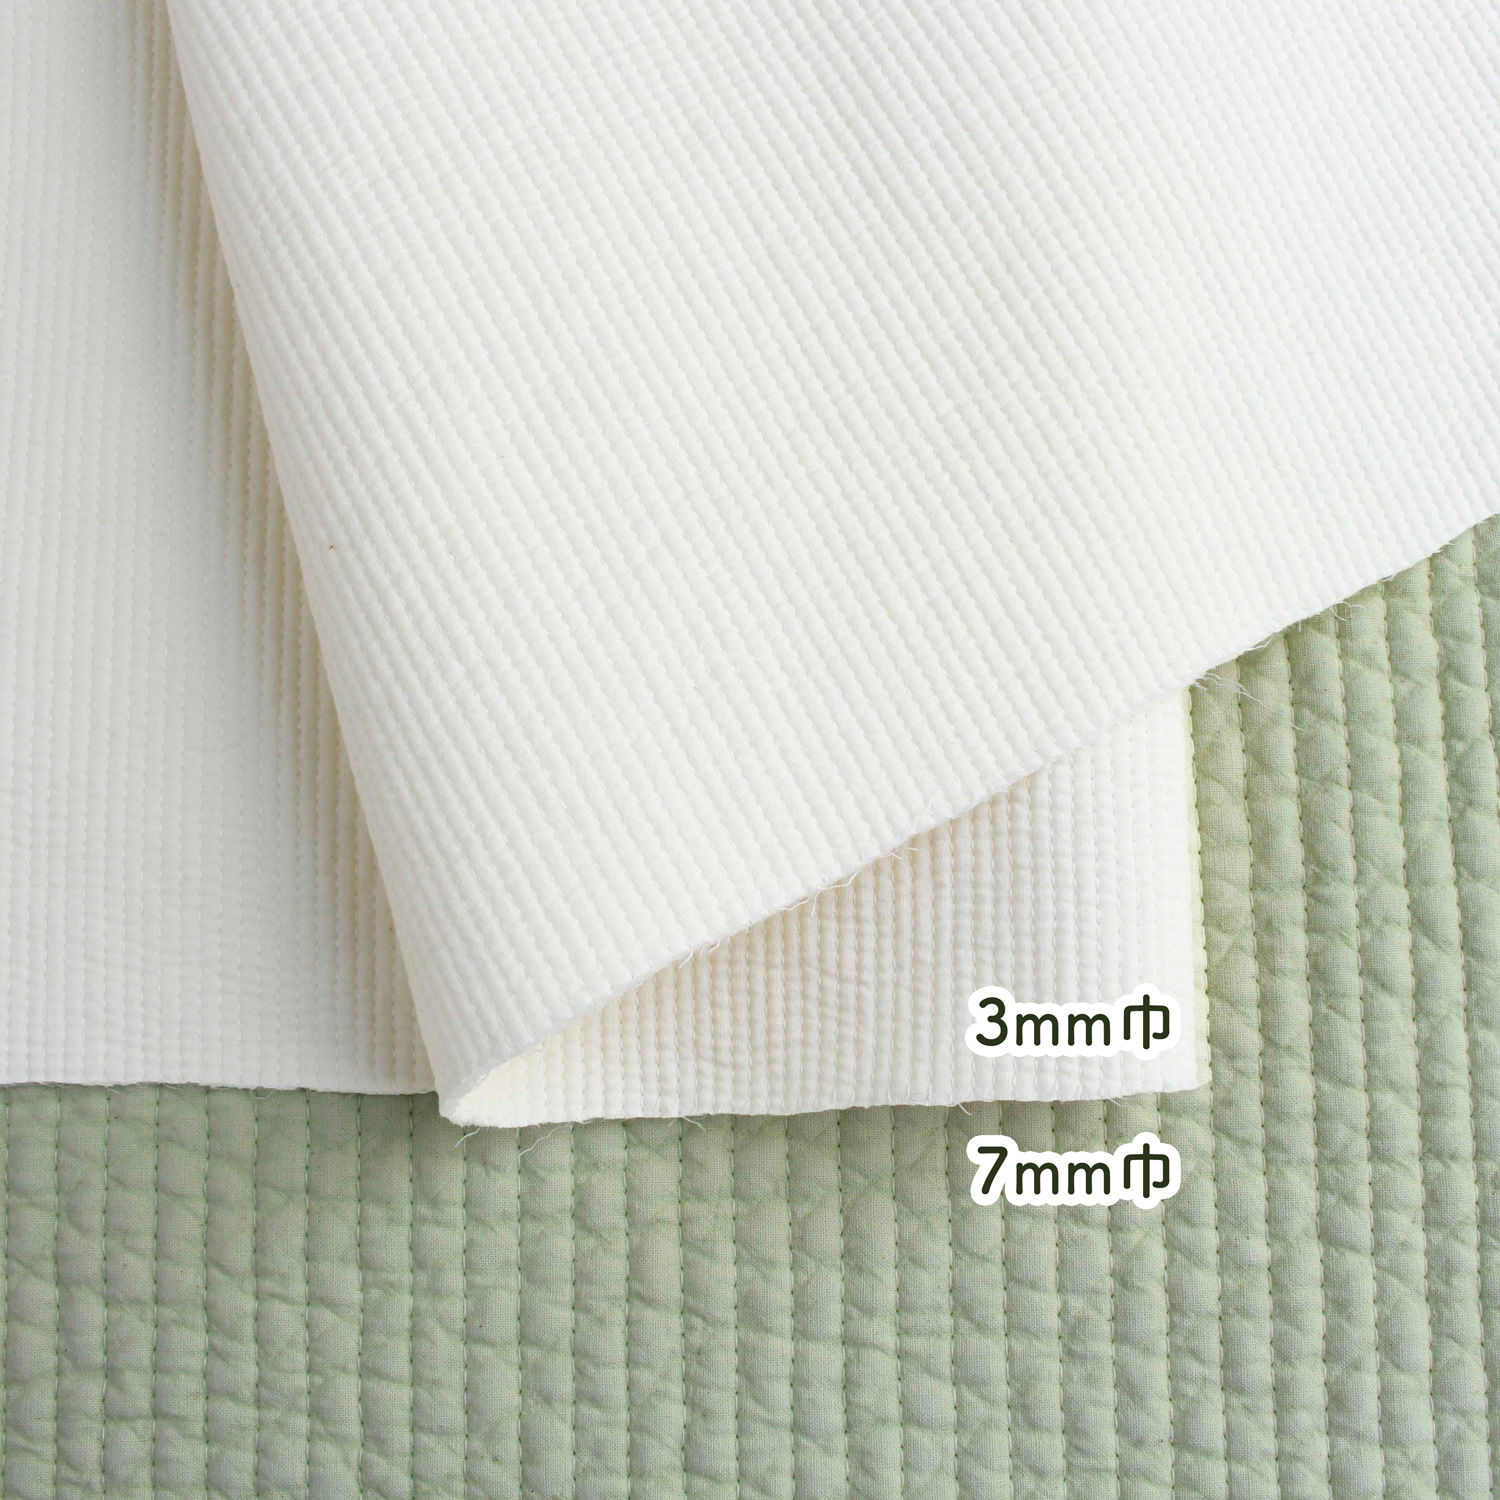 日本紐釦ヌビ・イブル生地キルト巾3mmと7mmの違い